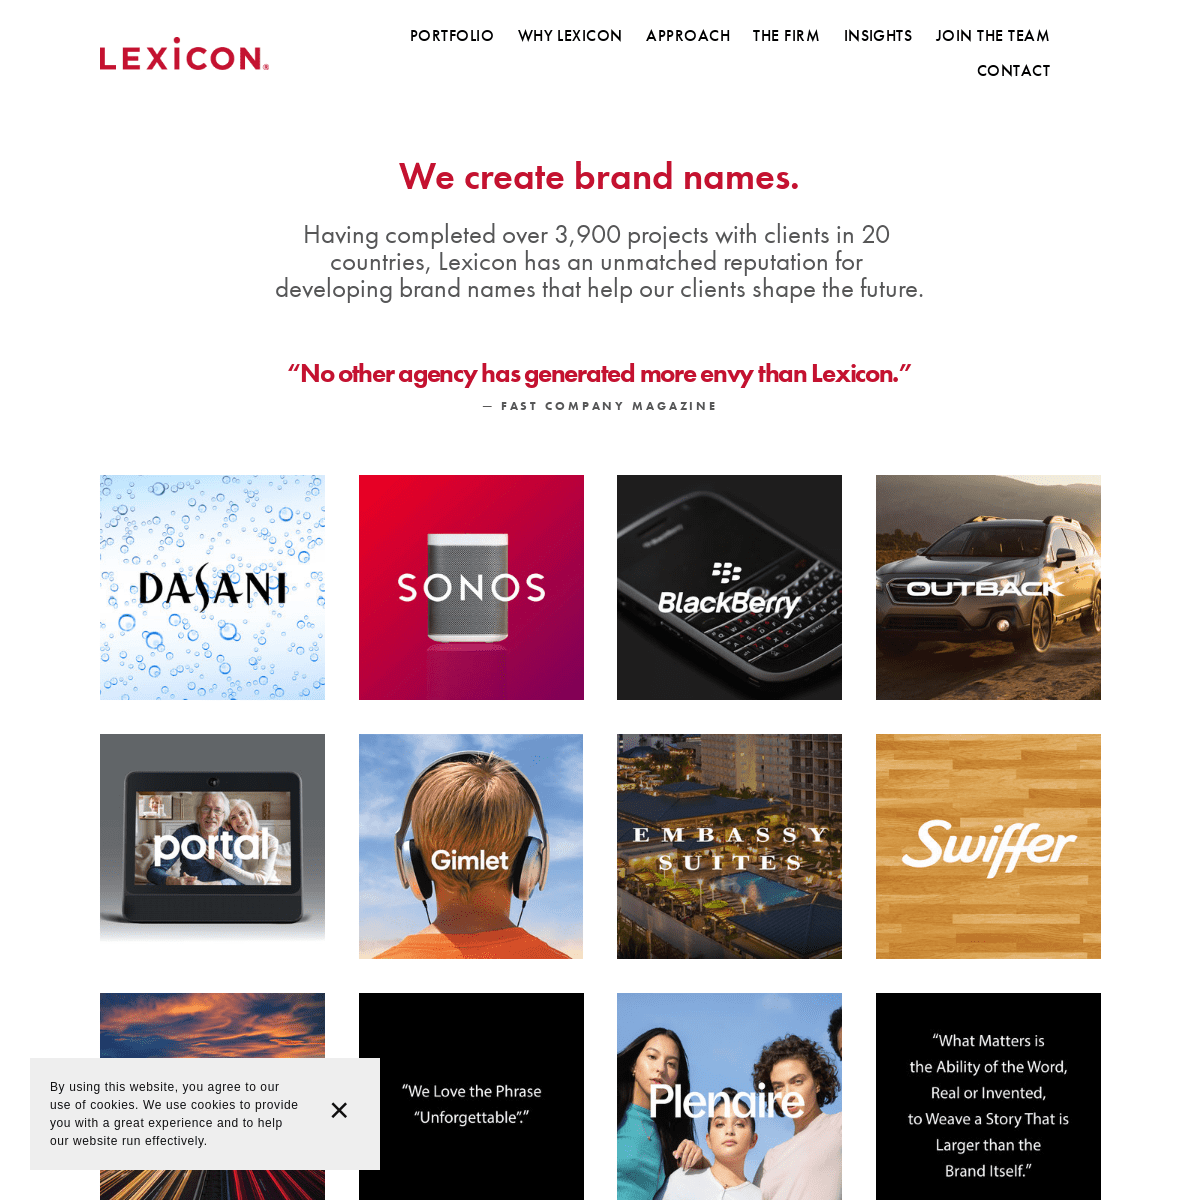 A complete backup of lexiconbranding.com